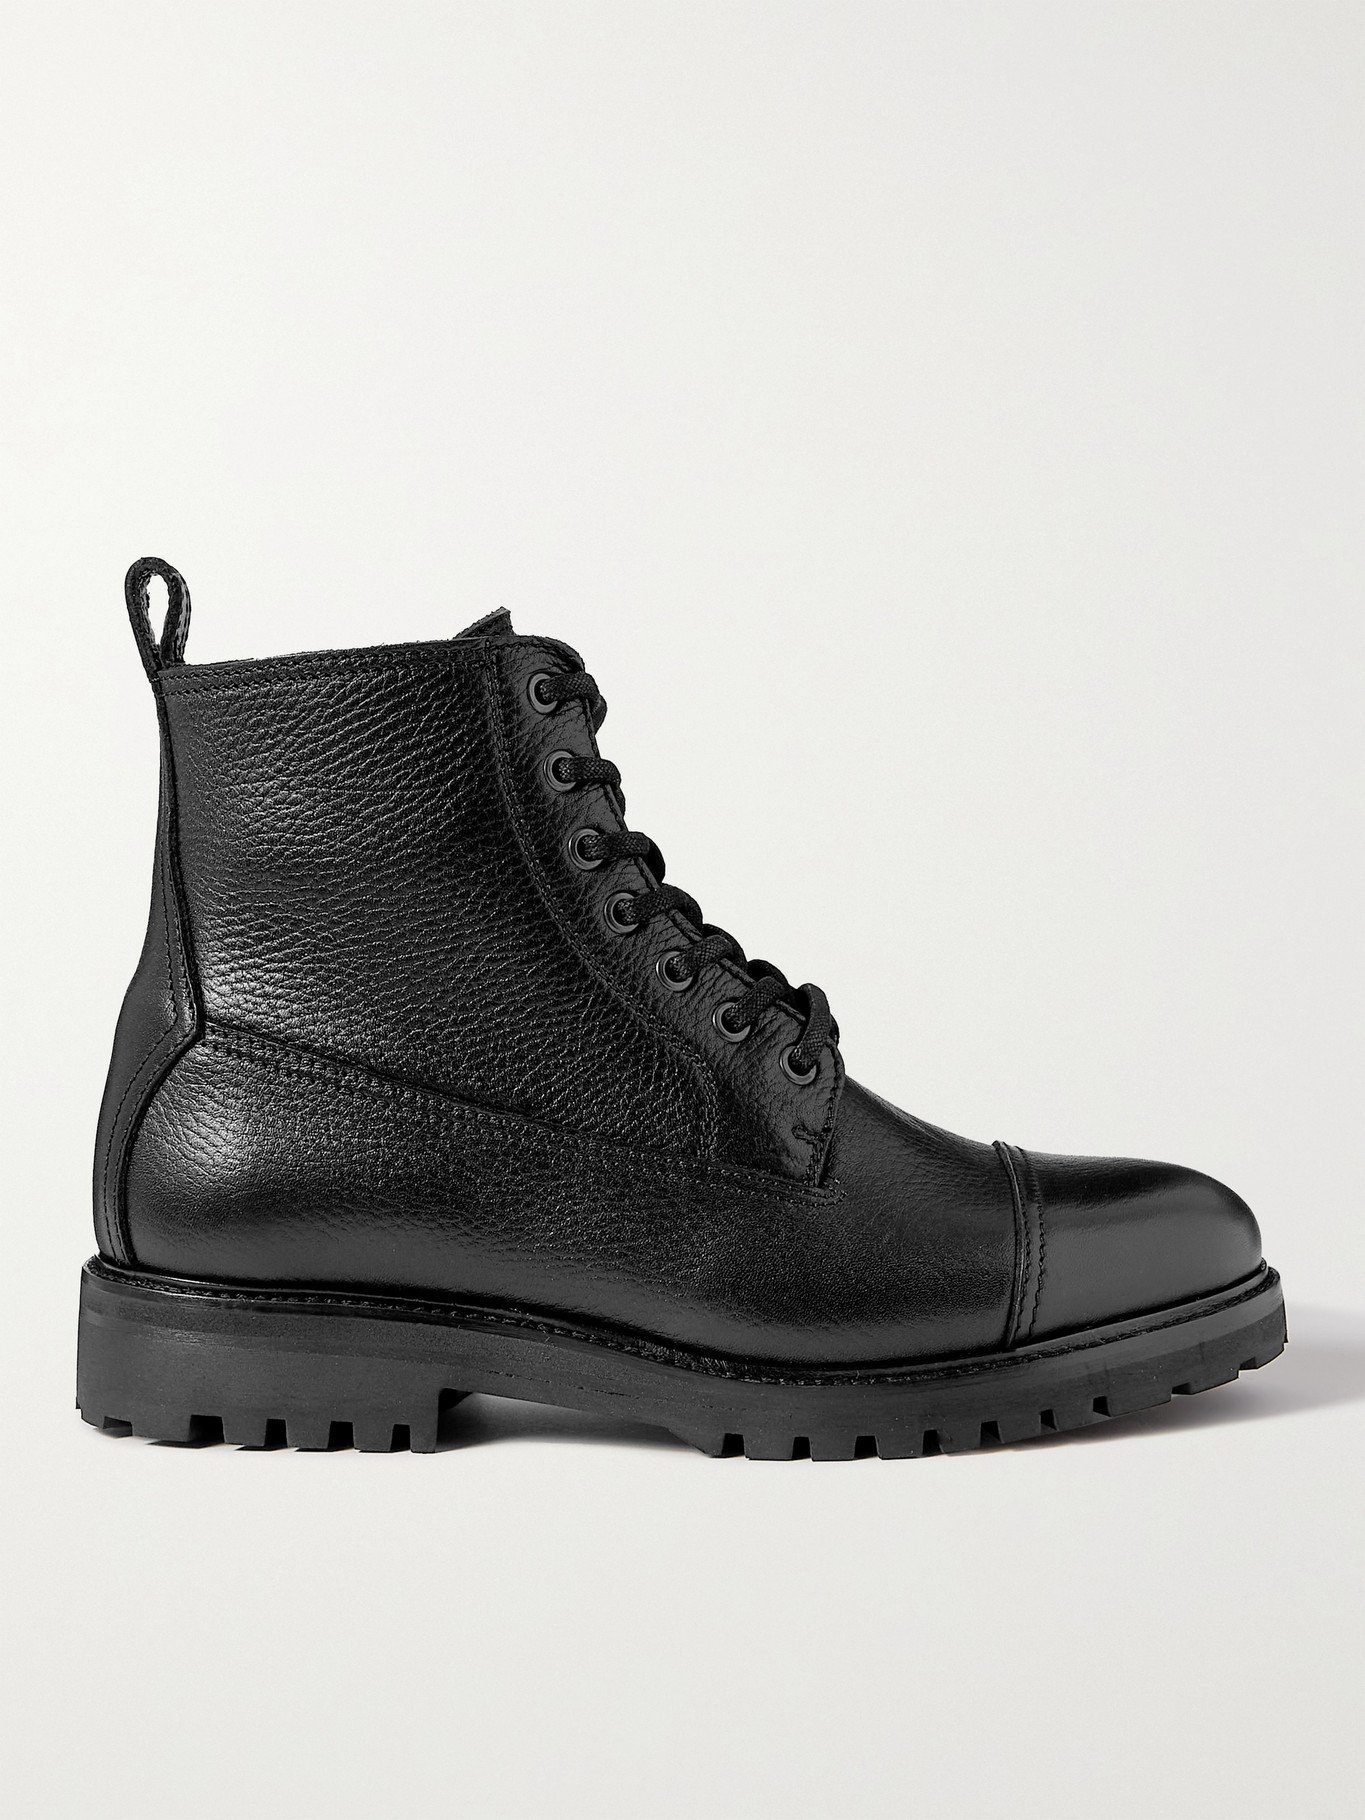 BELSTAFF - Alperton Full-Grain Leather Boots - Black - EU 42 Belstaff